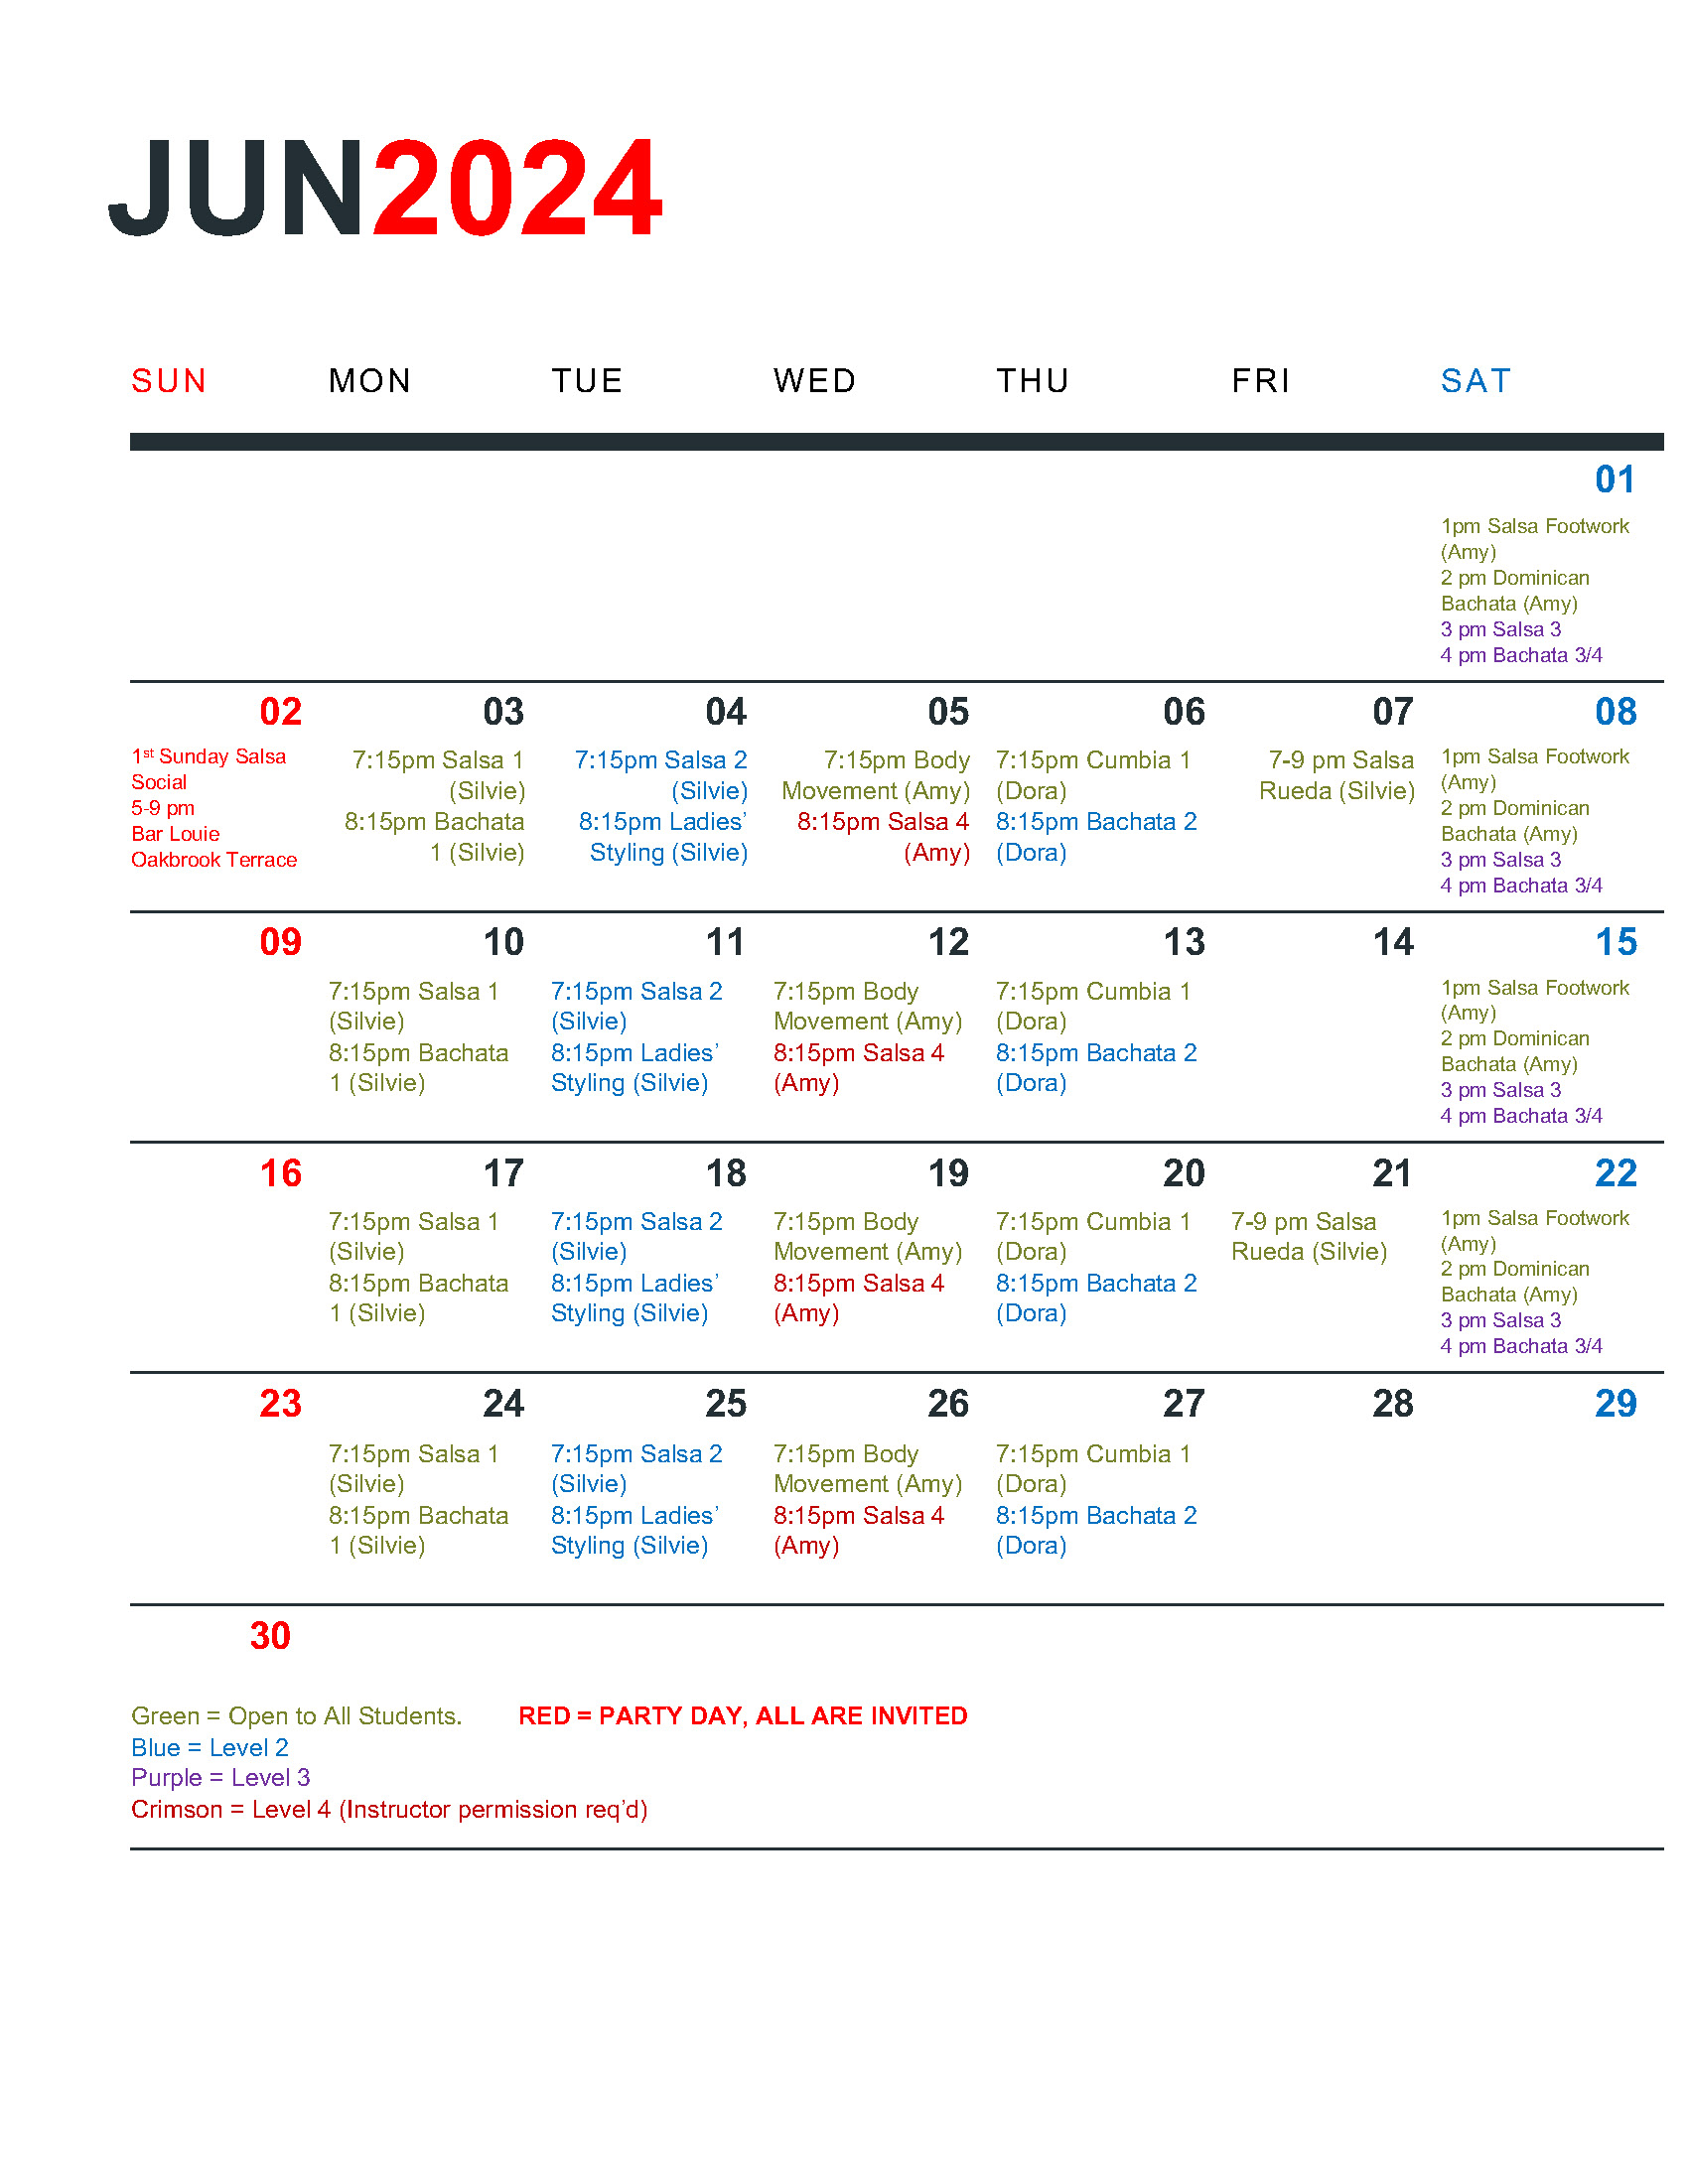 June 2024 schedule